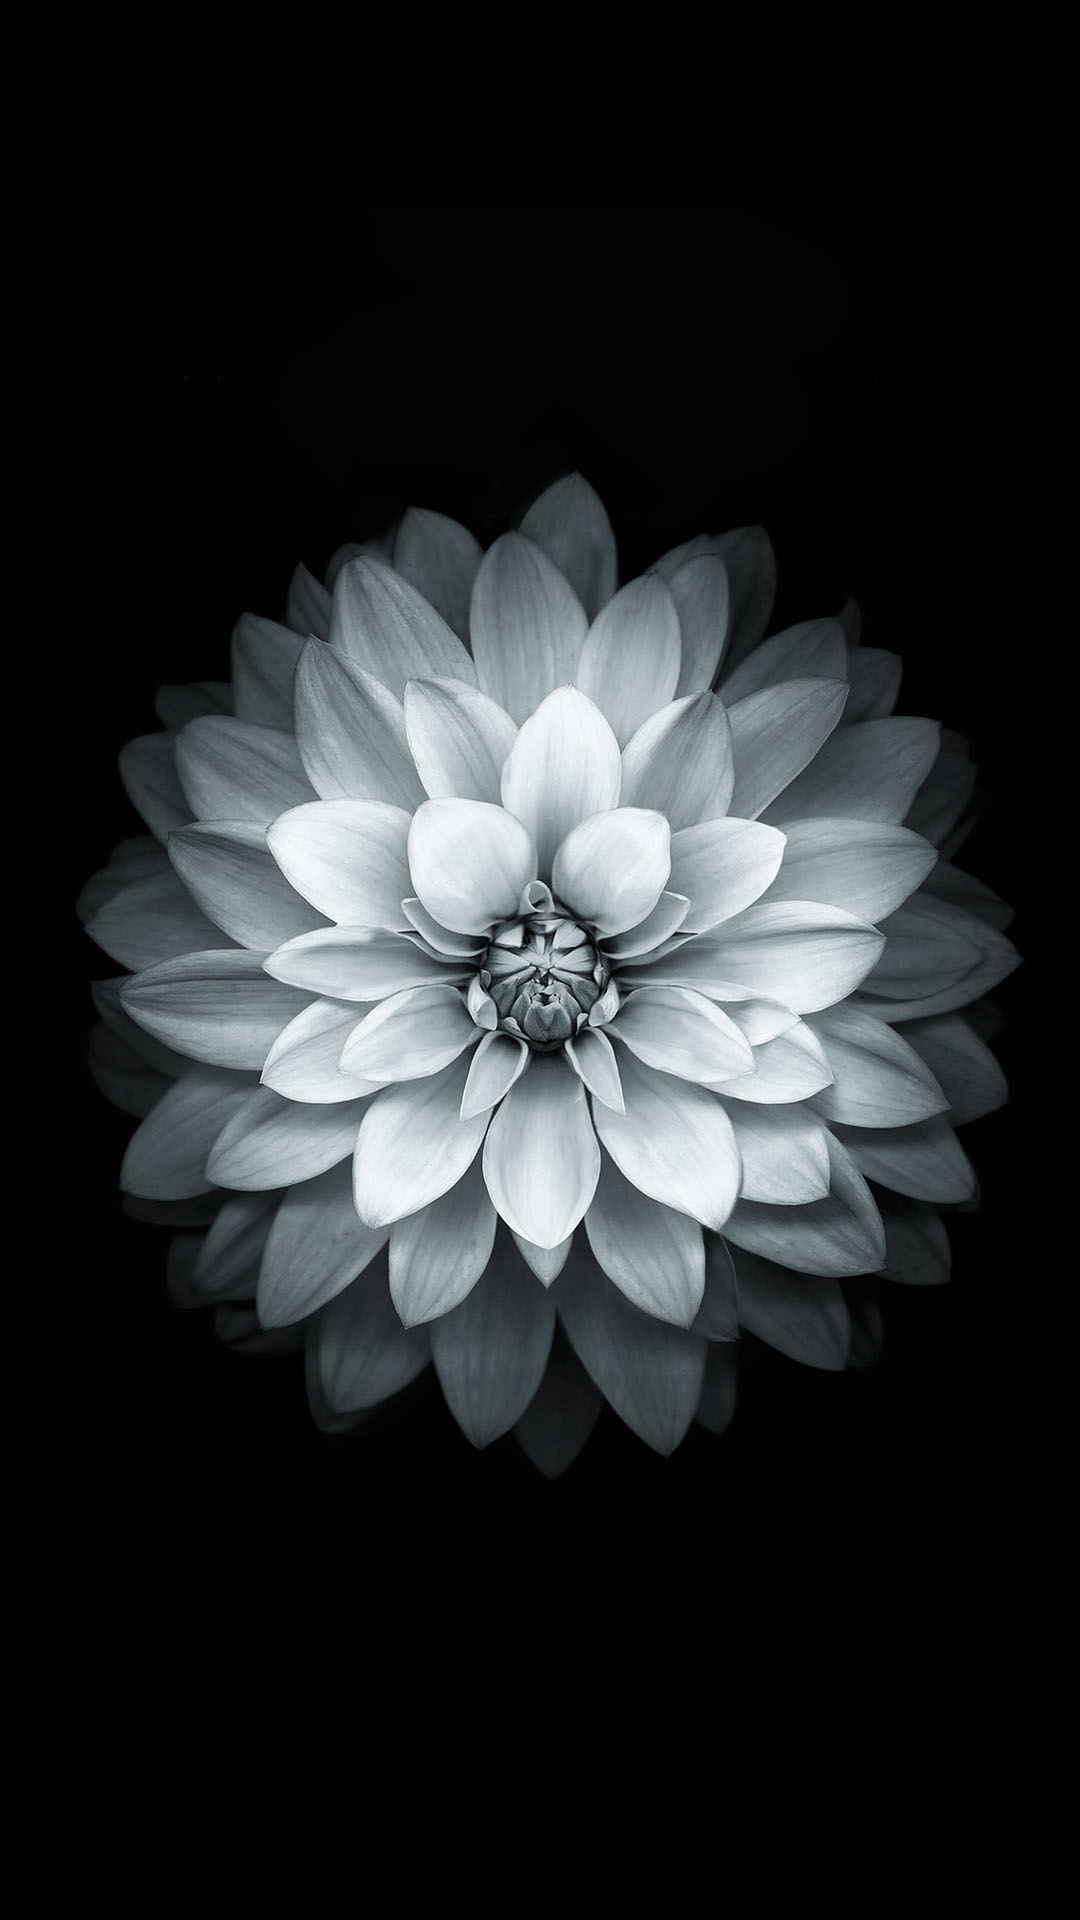 Black White Apple Lotus Flower Android Wallpaper